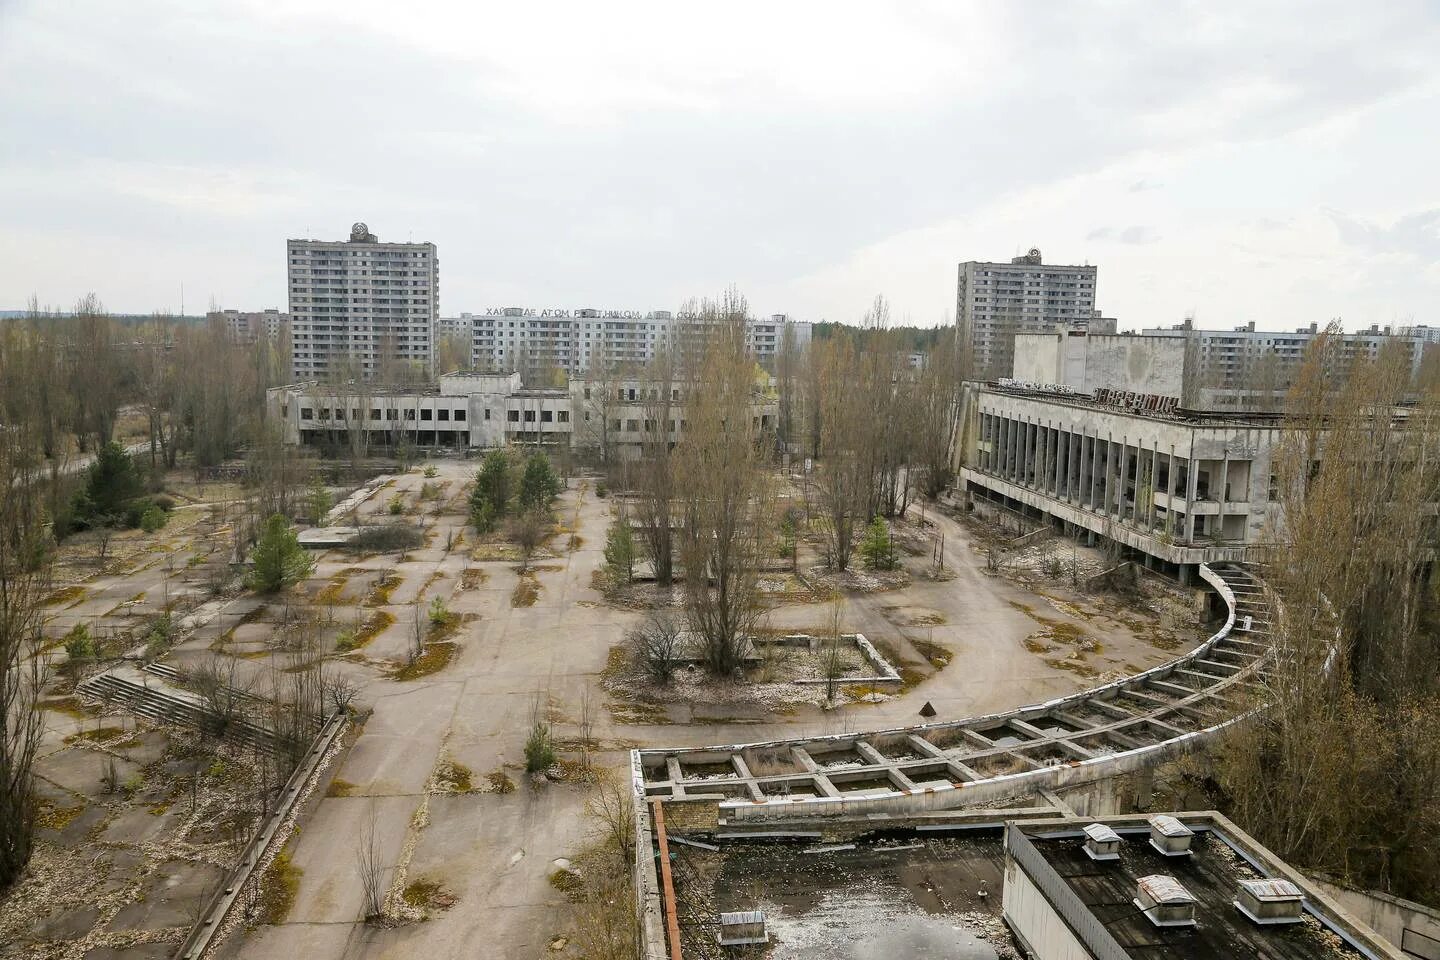 Http chernobyl. Чернобыль город Припять. Припять город призрак. Припять Центральная площадь. Город Припять Чернобыль после взрыва.